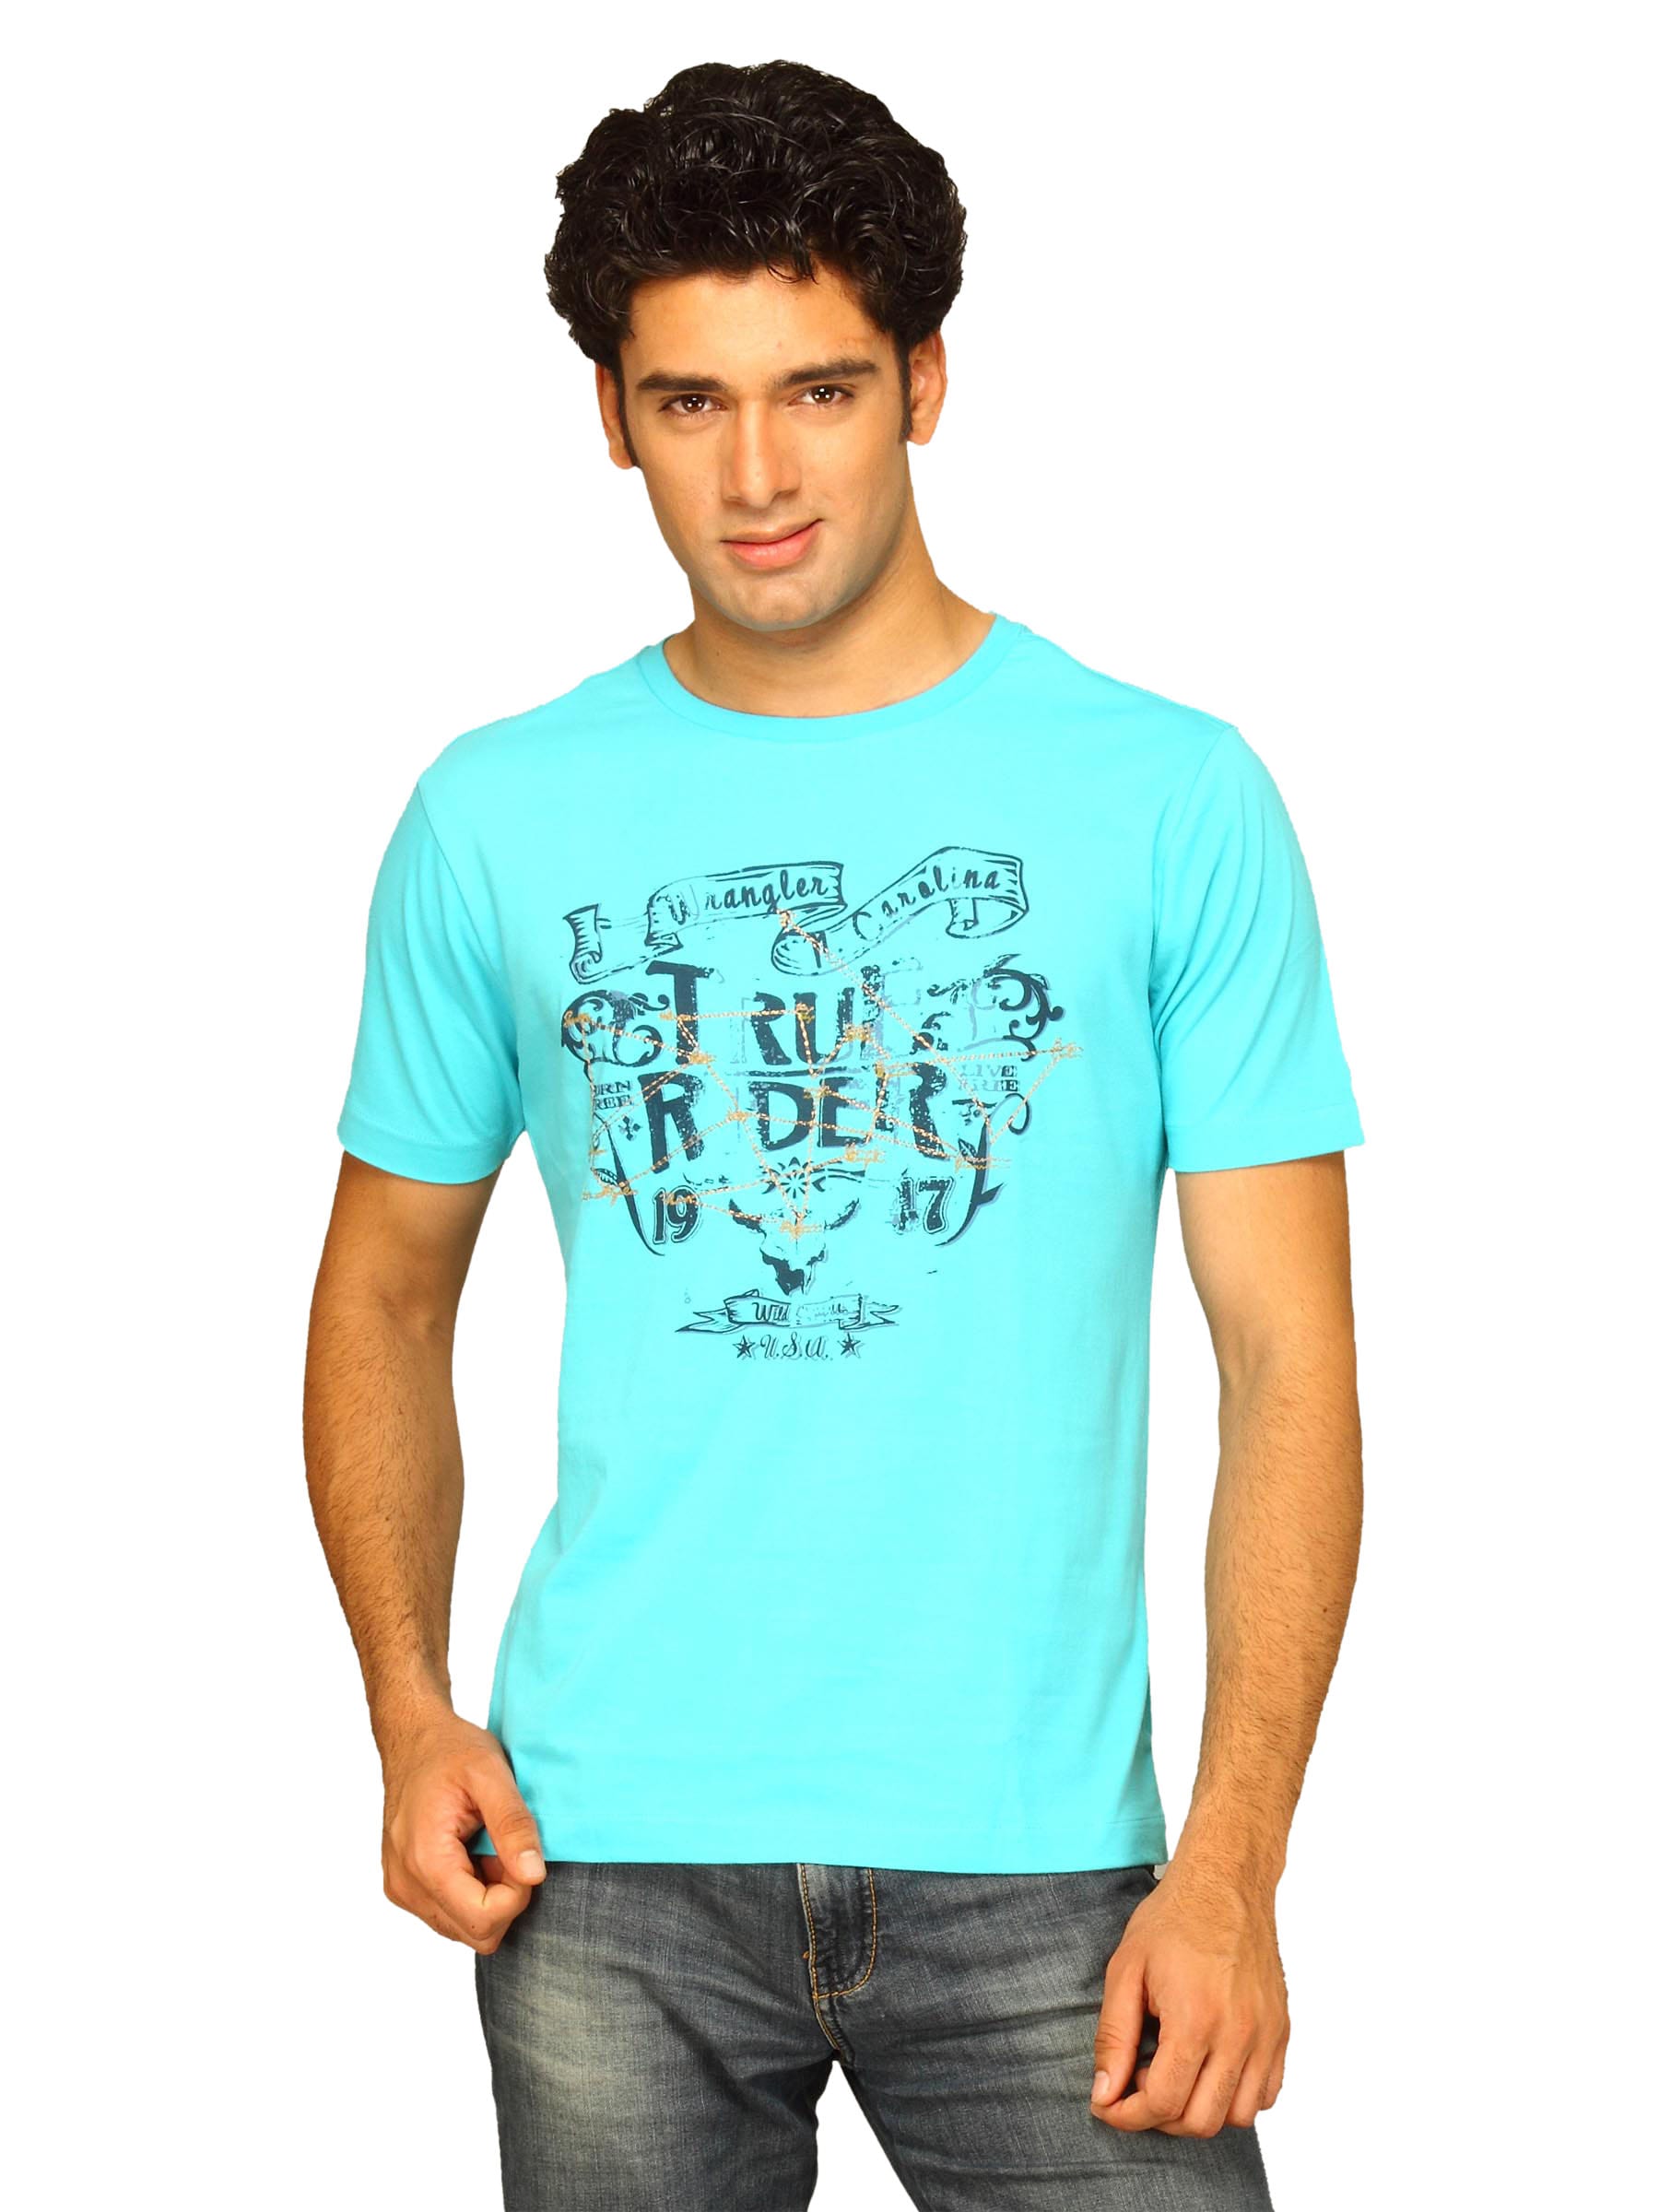 Wrangler Men's True Rider Turquoise T-shirt